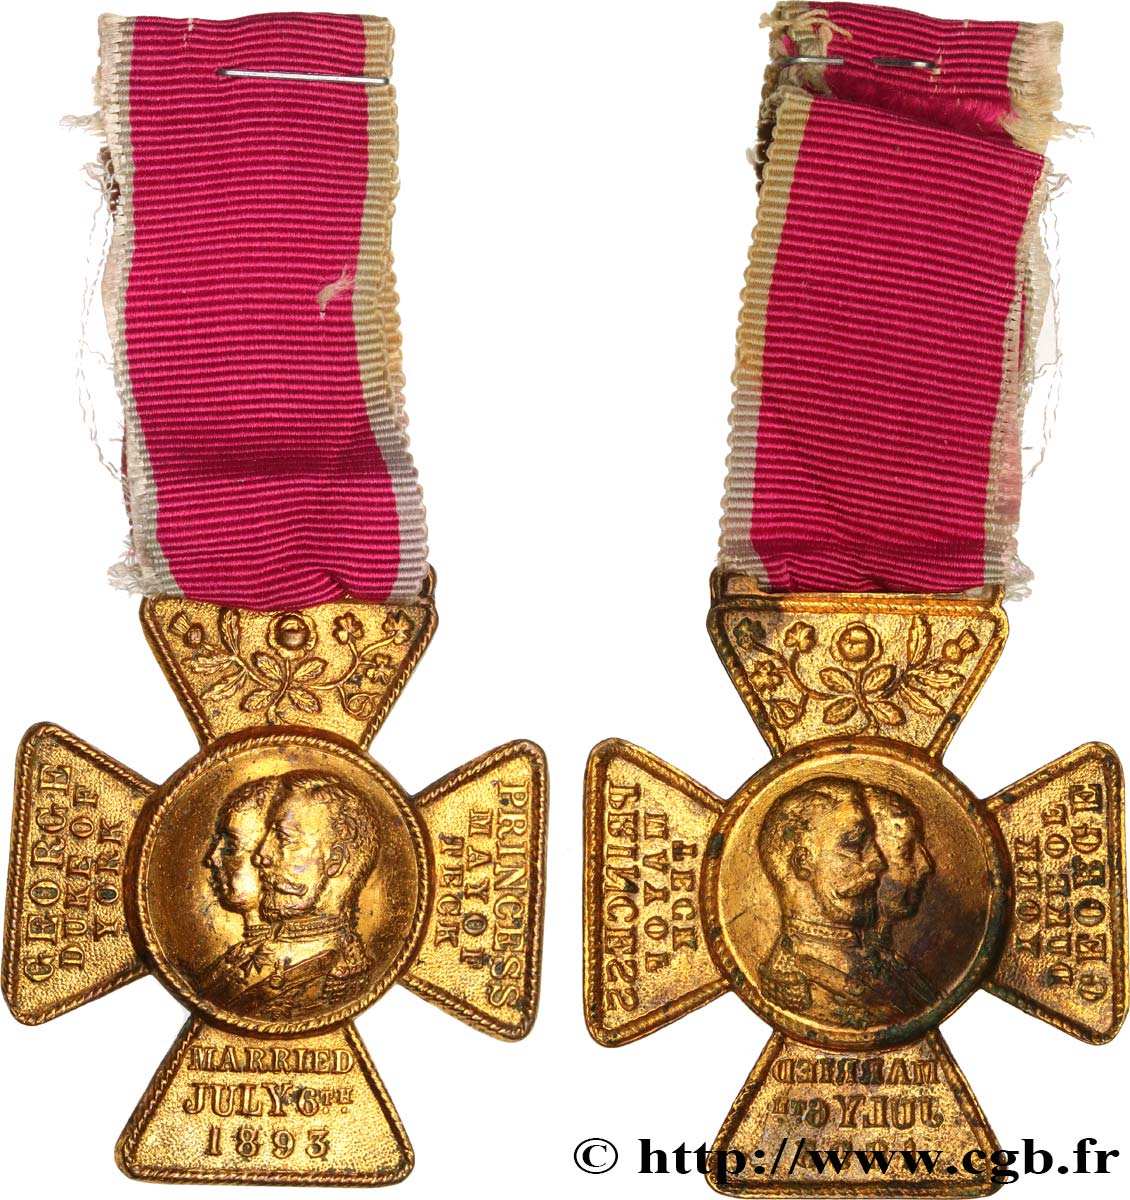 ANGLETERRE - GEORGES V Médaille, Mariage de la Princesse Victoria de teck avec le Prince George, duc d’York SS